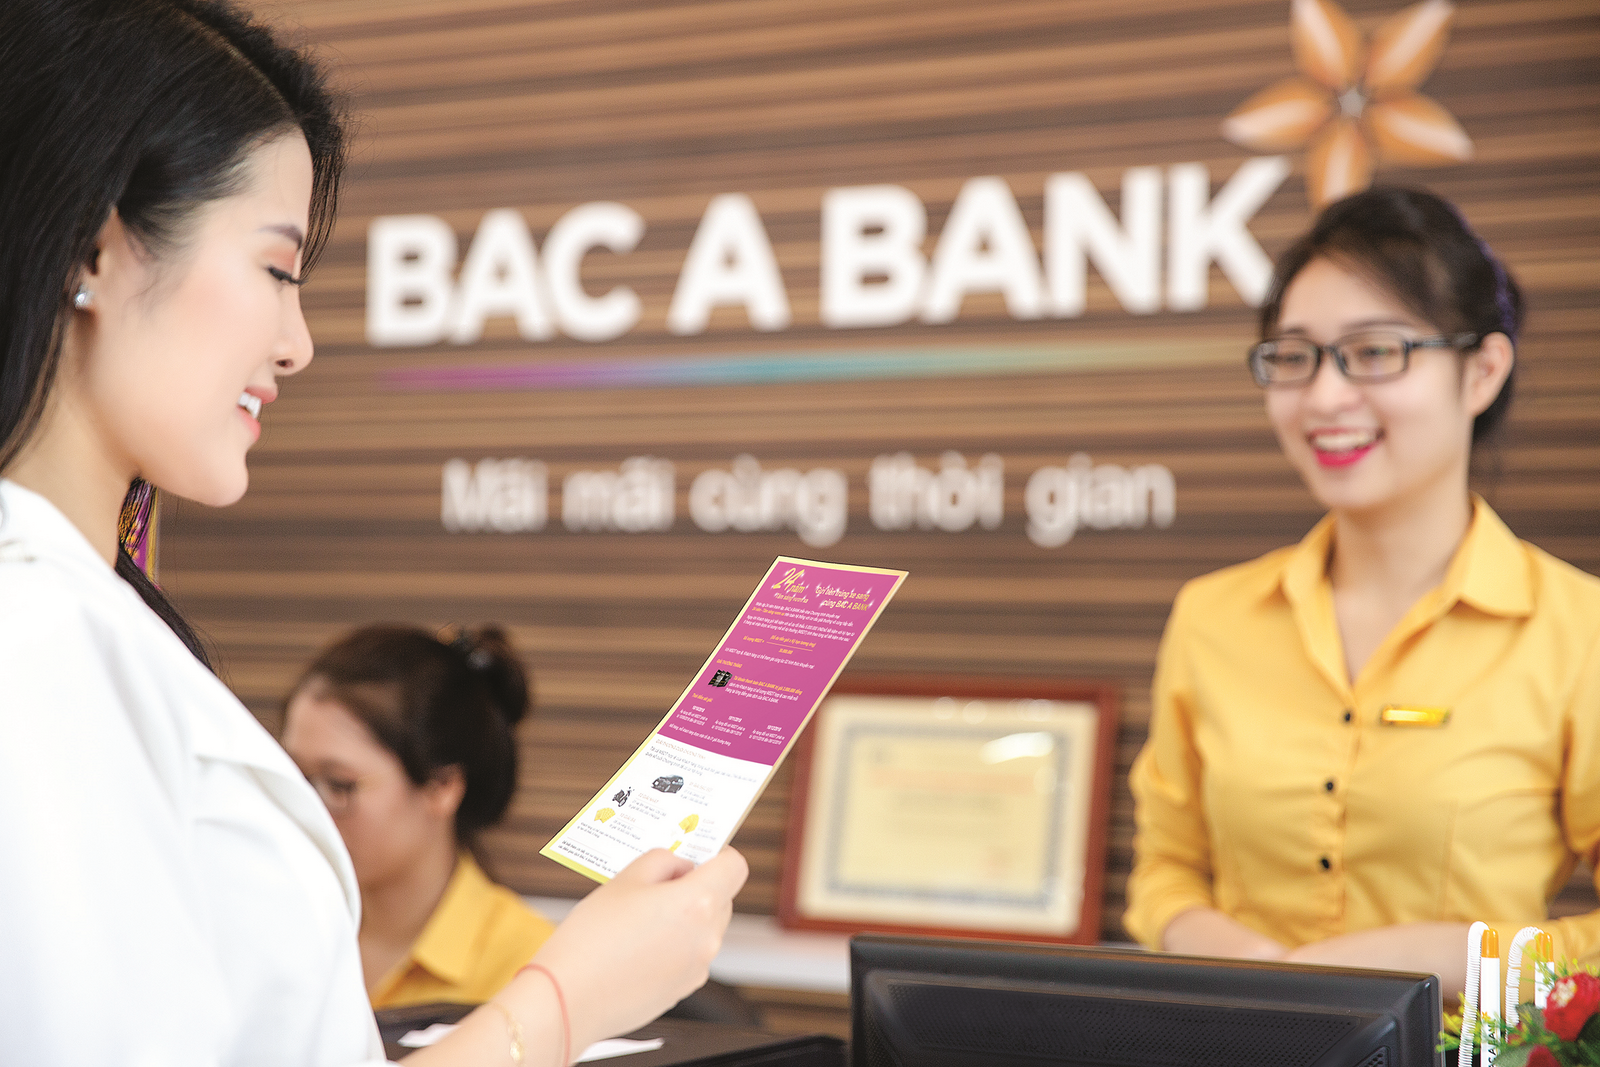 BAC A BANK trong nỗ lực trở thành “ngân hàng toàn dân”